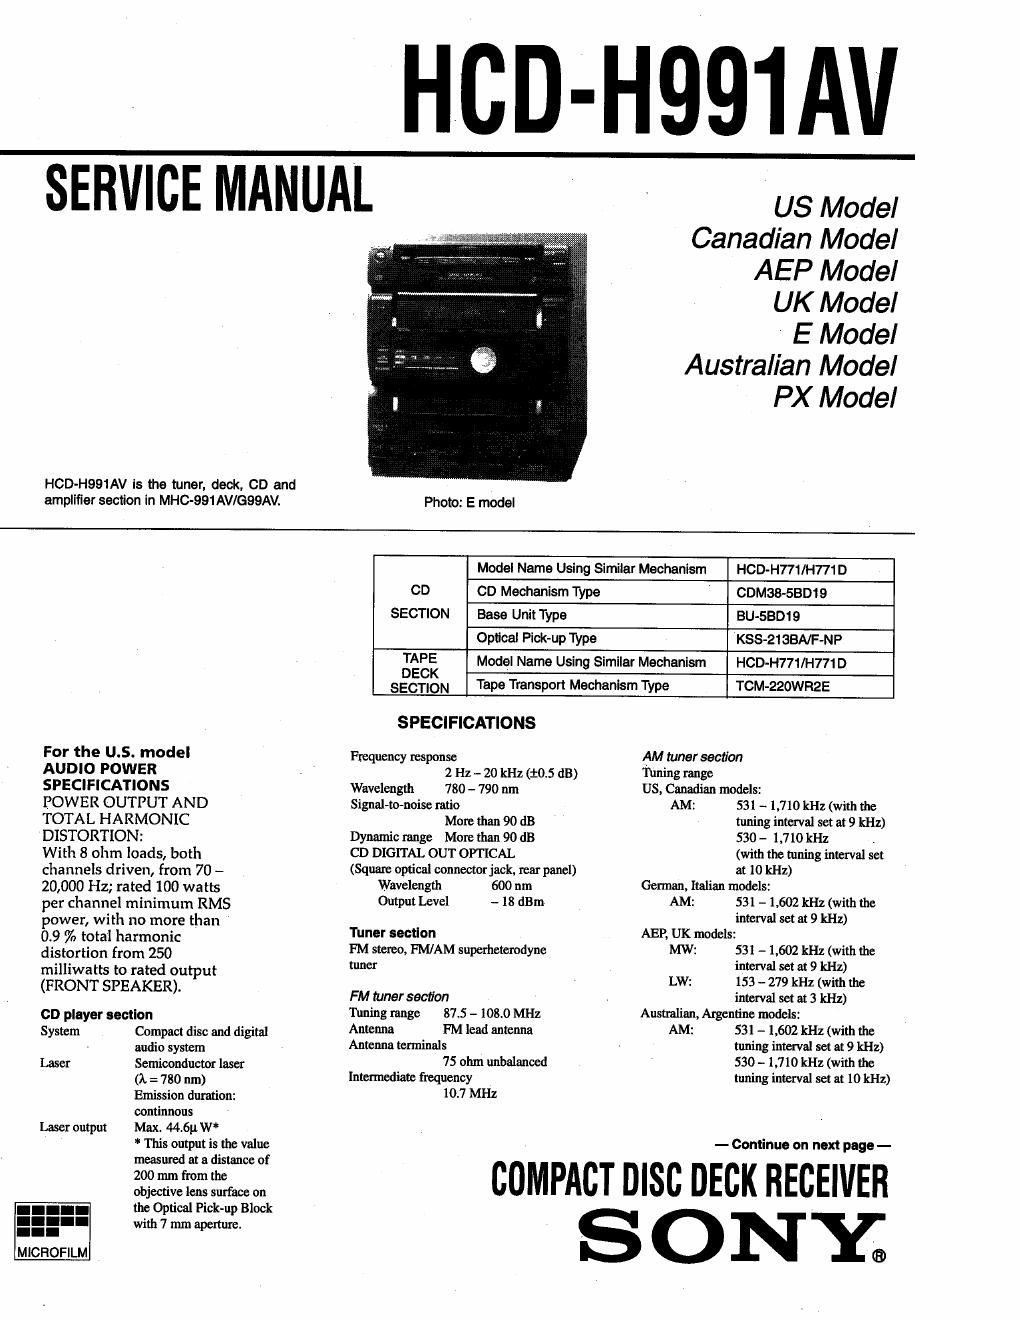 sony hcd h 991 av service manual